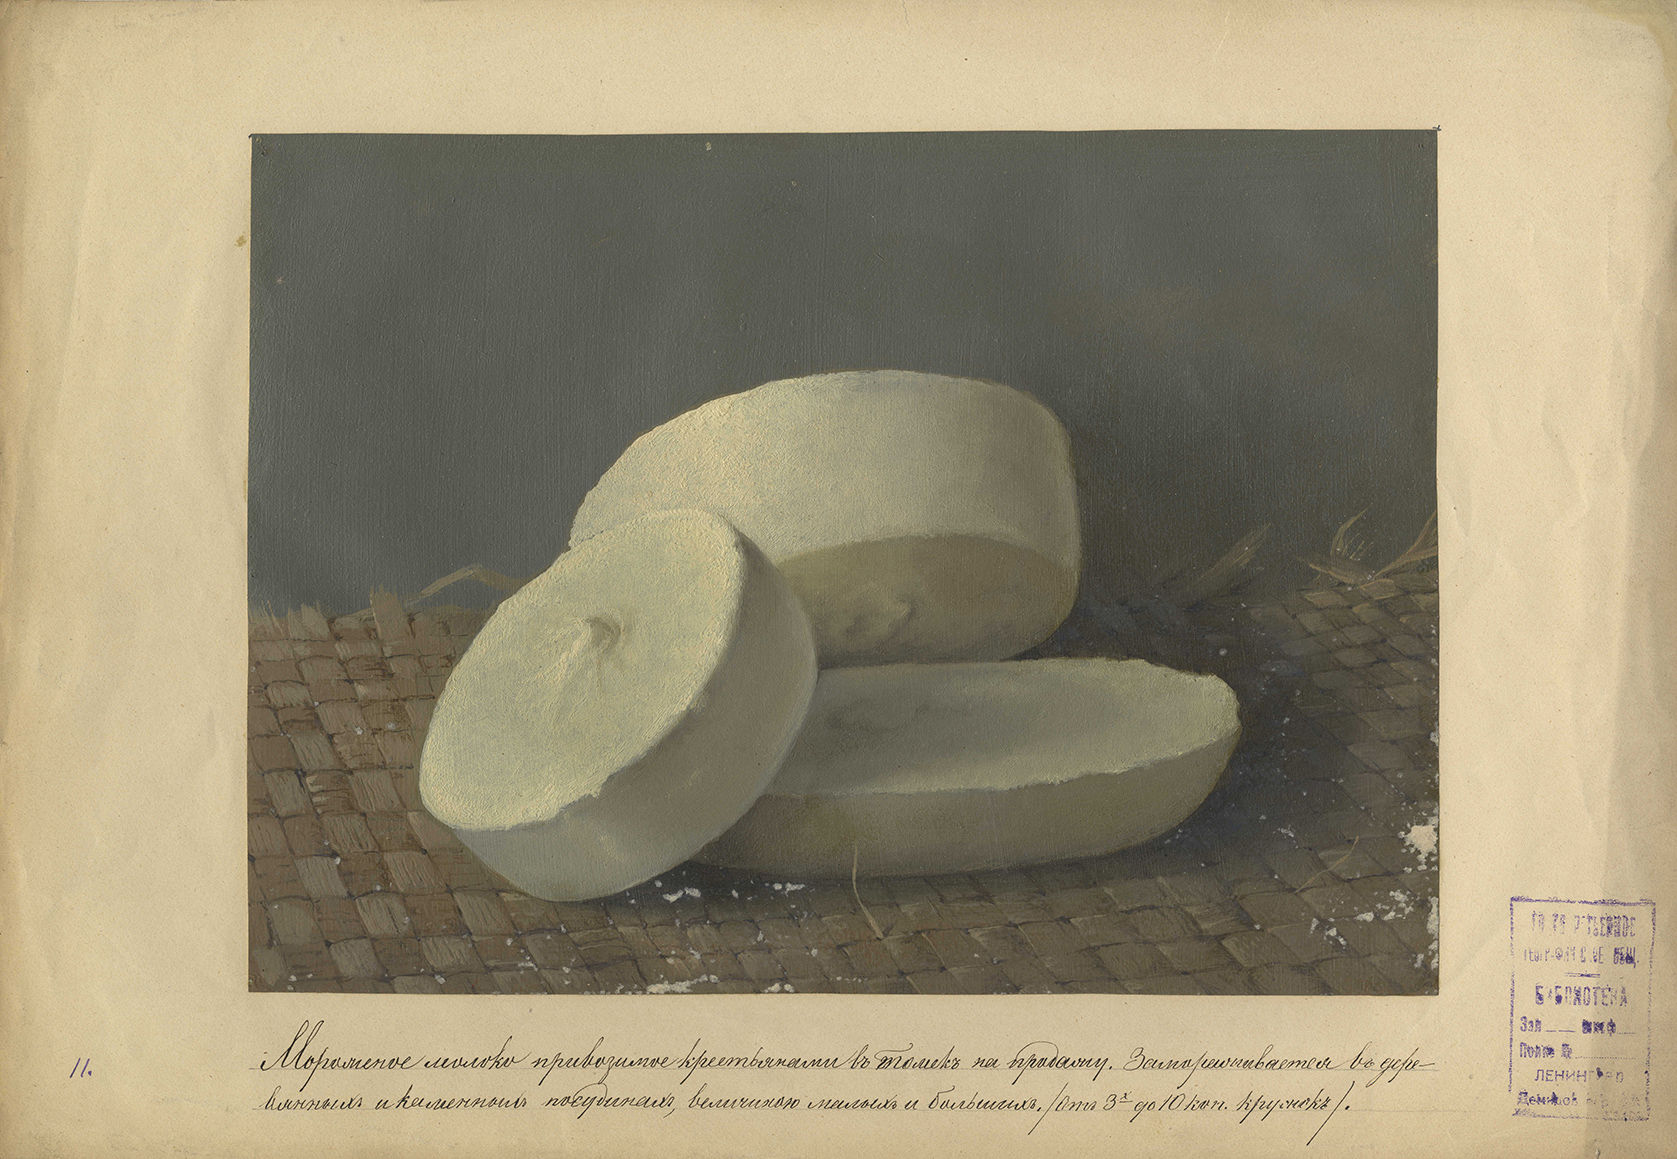 Мороженое молоко, производимое крестьянами в Томске на продажу. П. Г. Кошаров. 1894. Картон, масло.